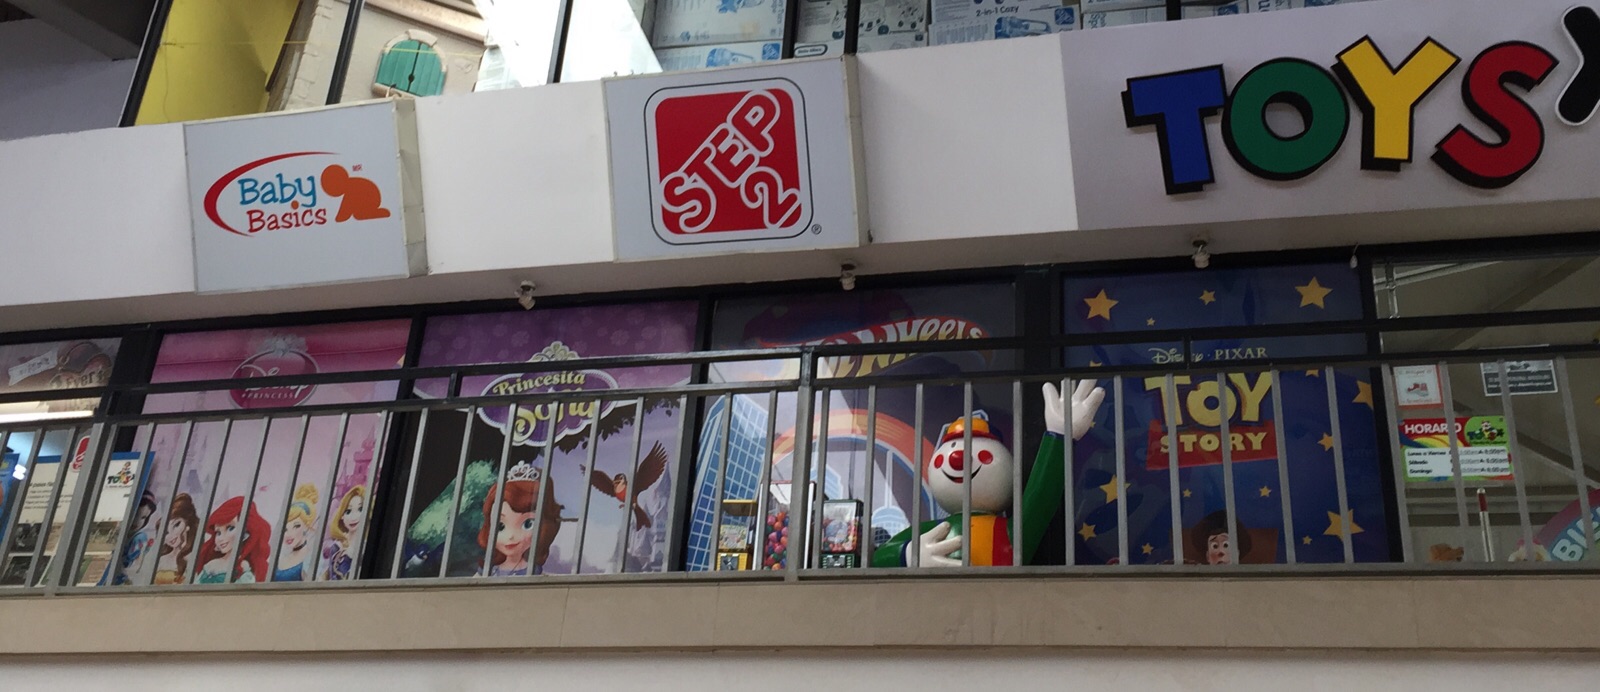 Tiendas Toys ofrece 300 empleos temporales en Costa Rica